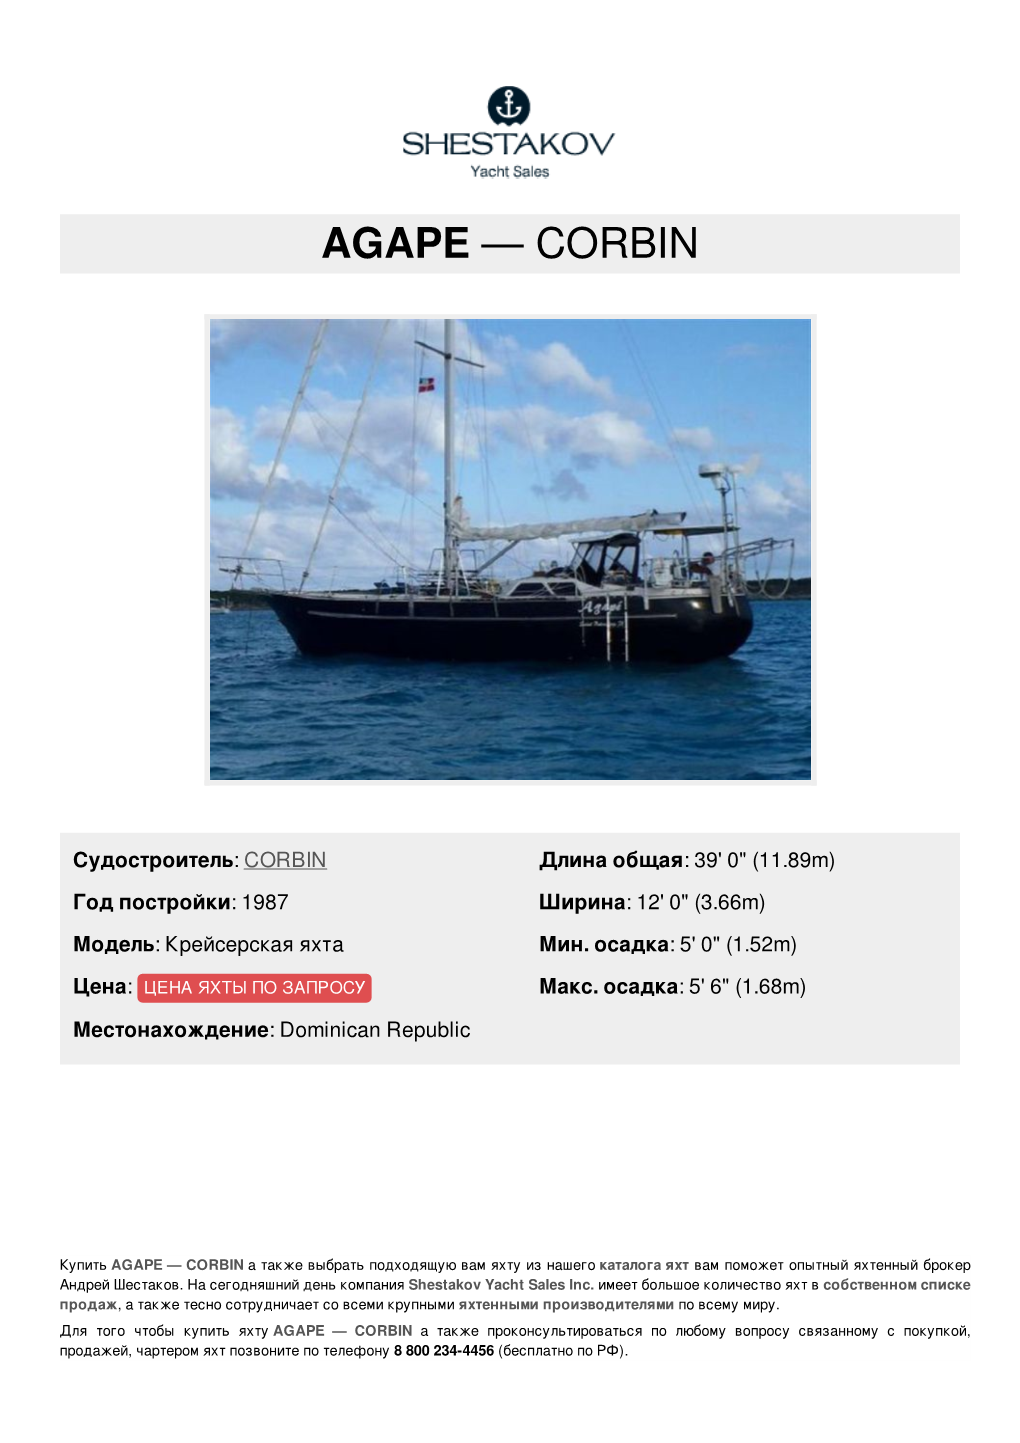 Agape — Corbin